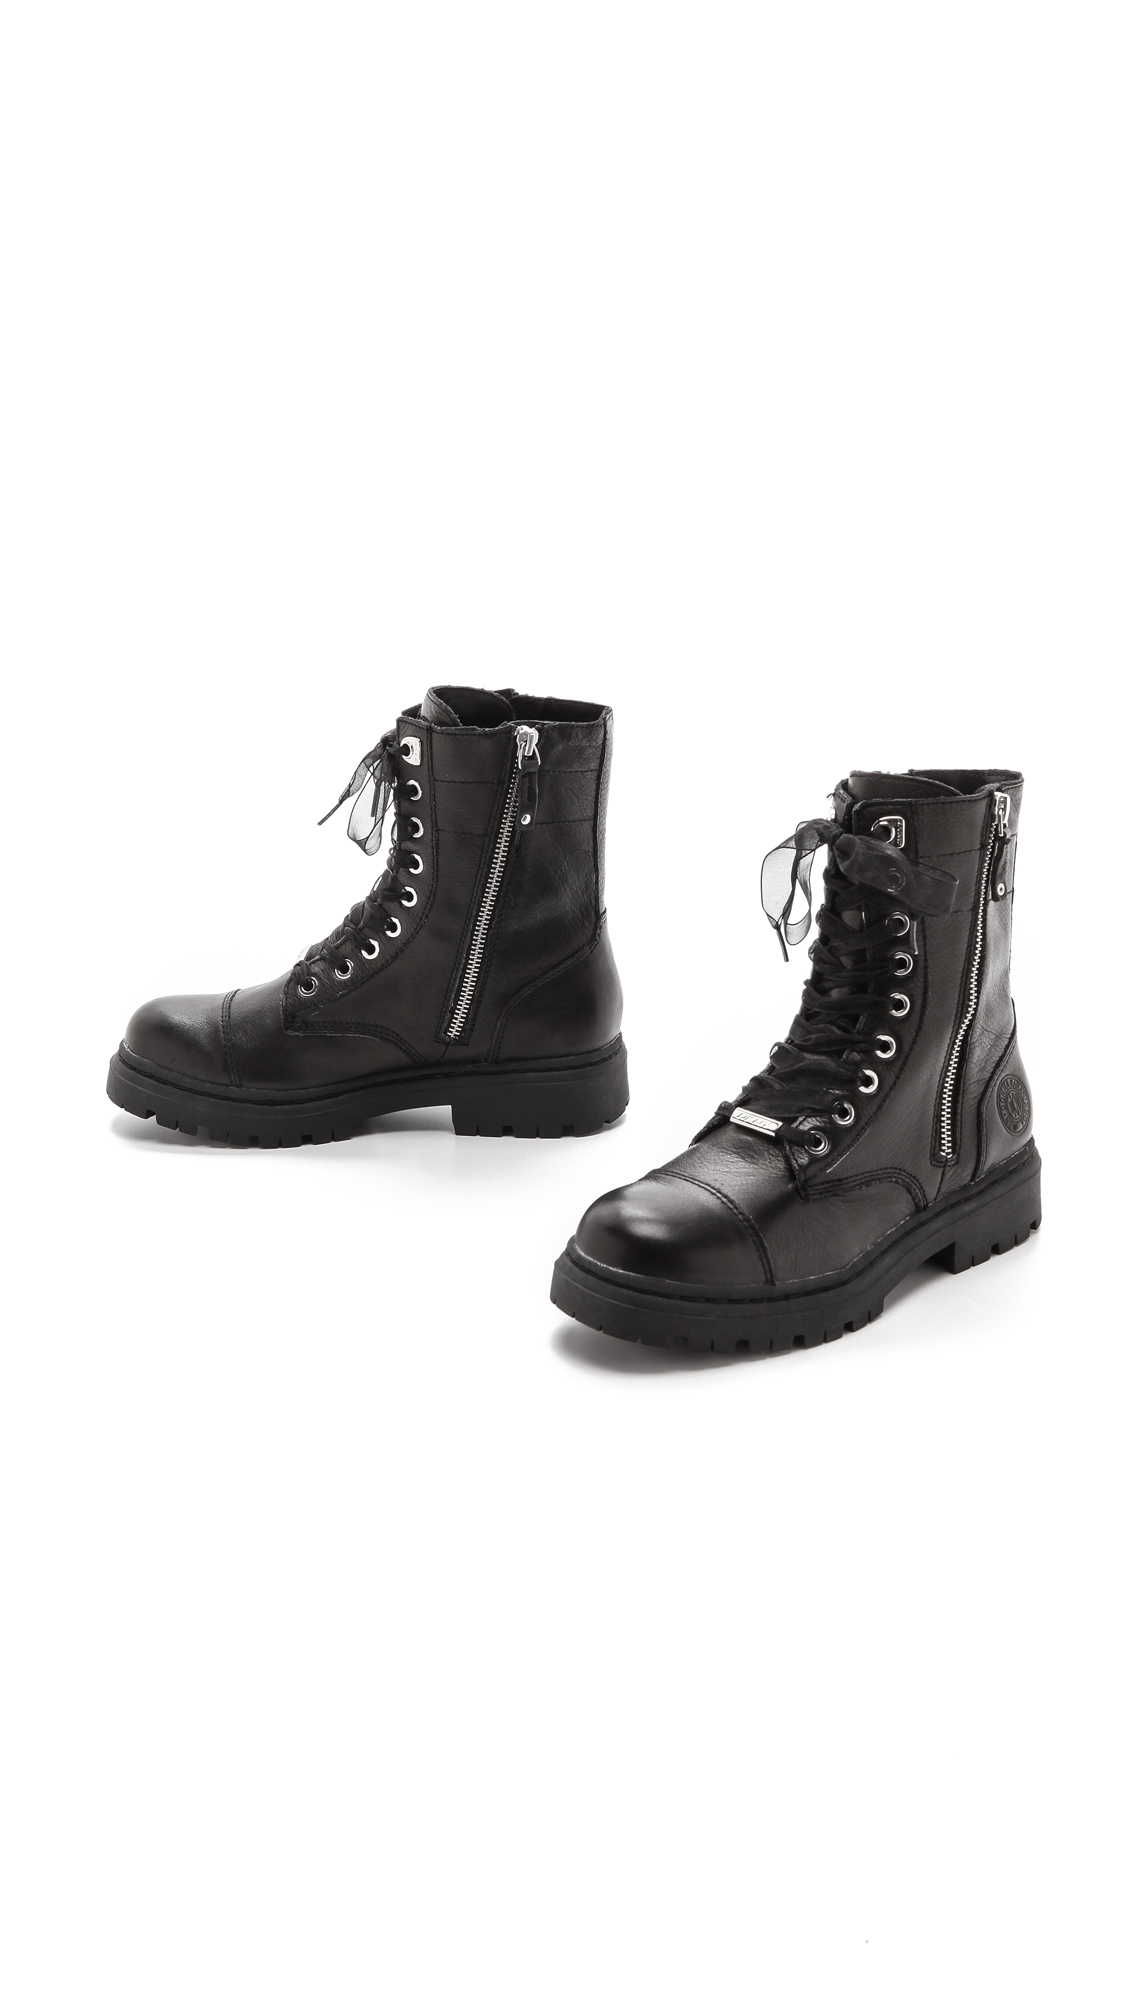 DKNY Roux Combat Boots - Black - Lyst